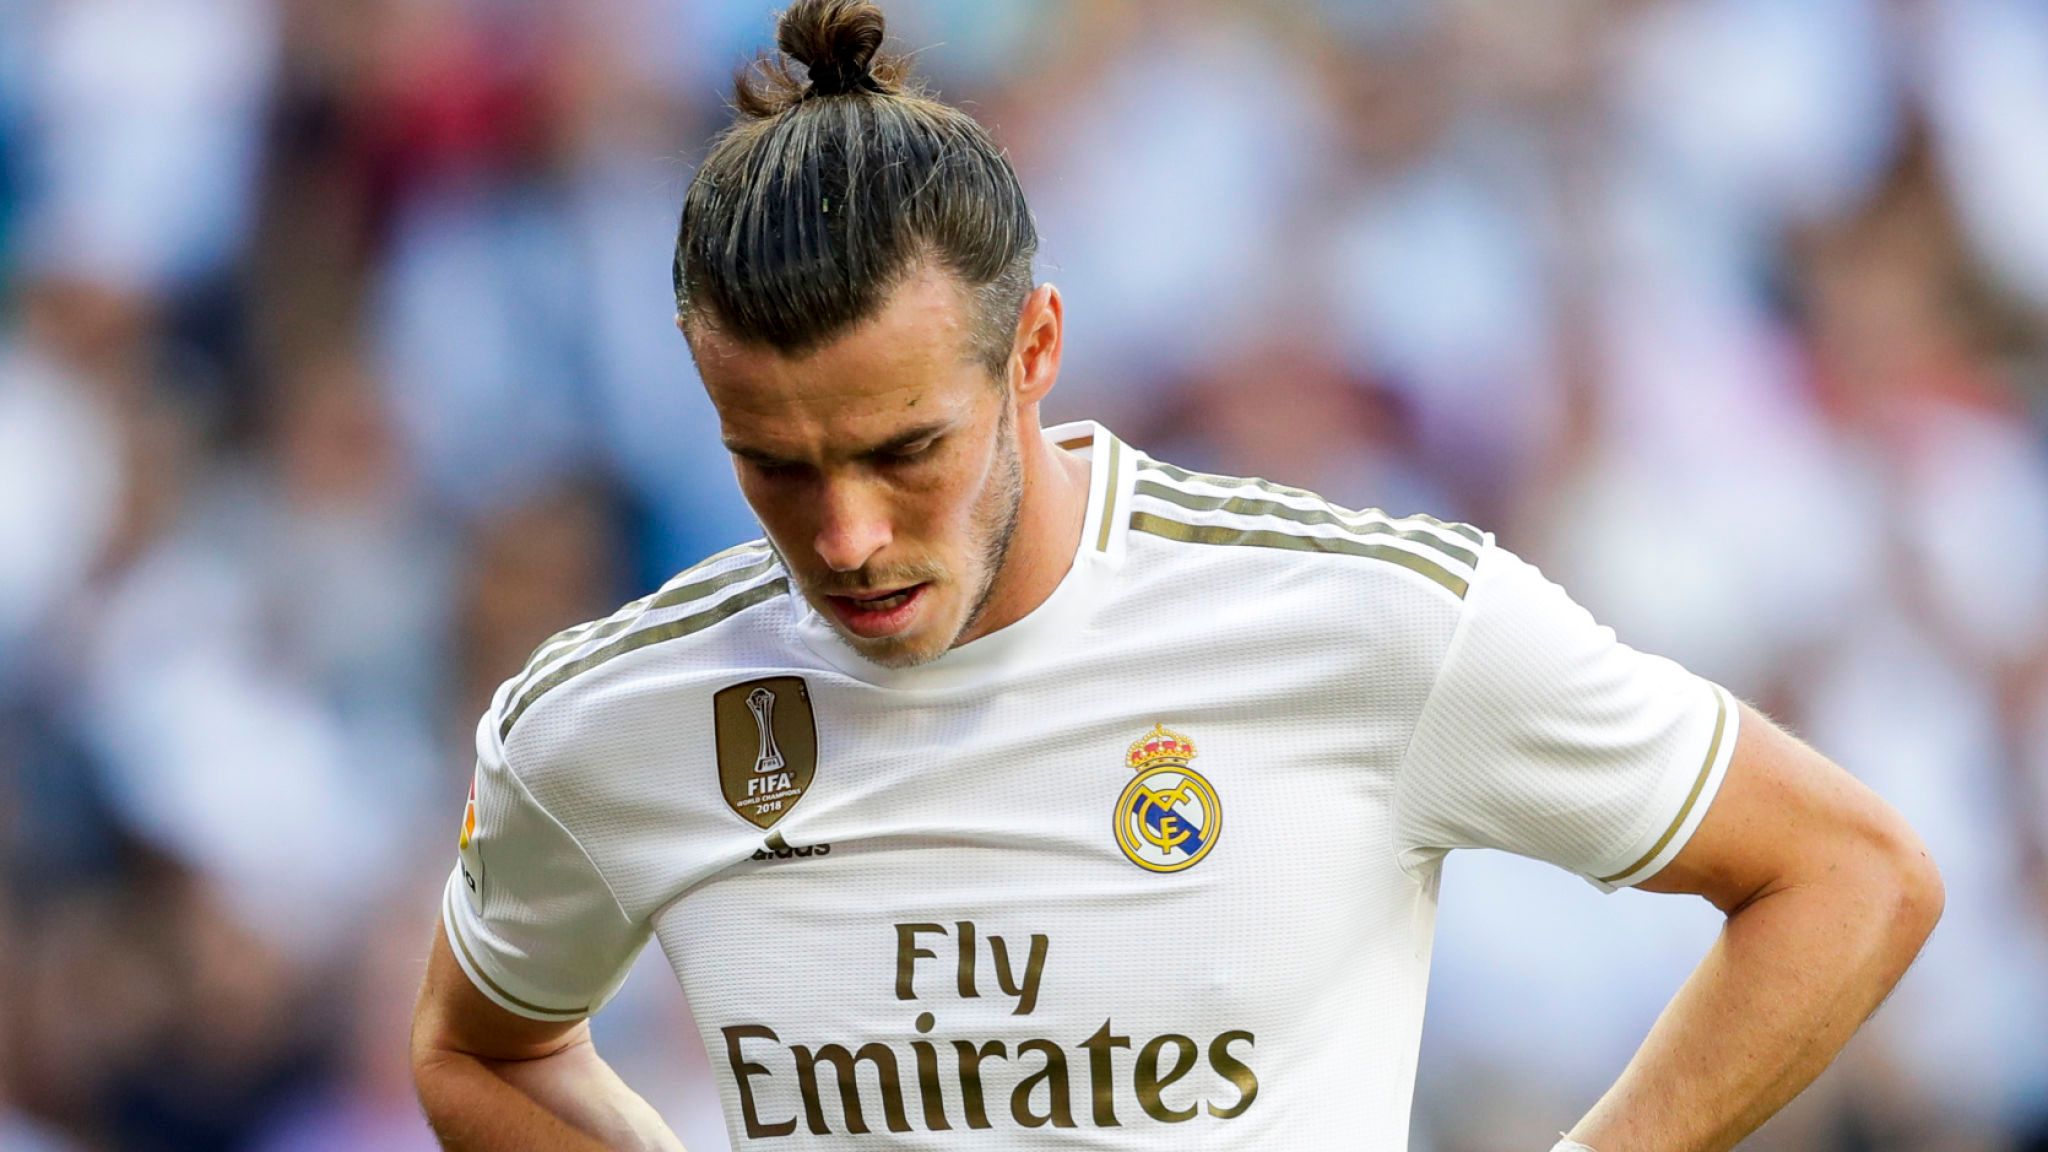 Tout n'a pas été rose dans le parcours glorieux de Gareth Bale au Real Madrid. Le Gallois est constamment critiqué par les supporters